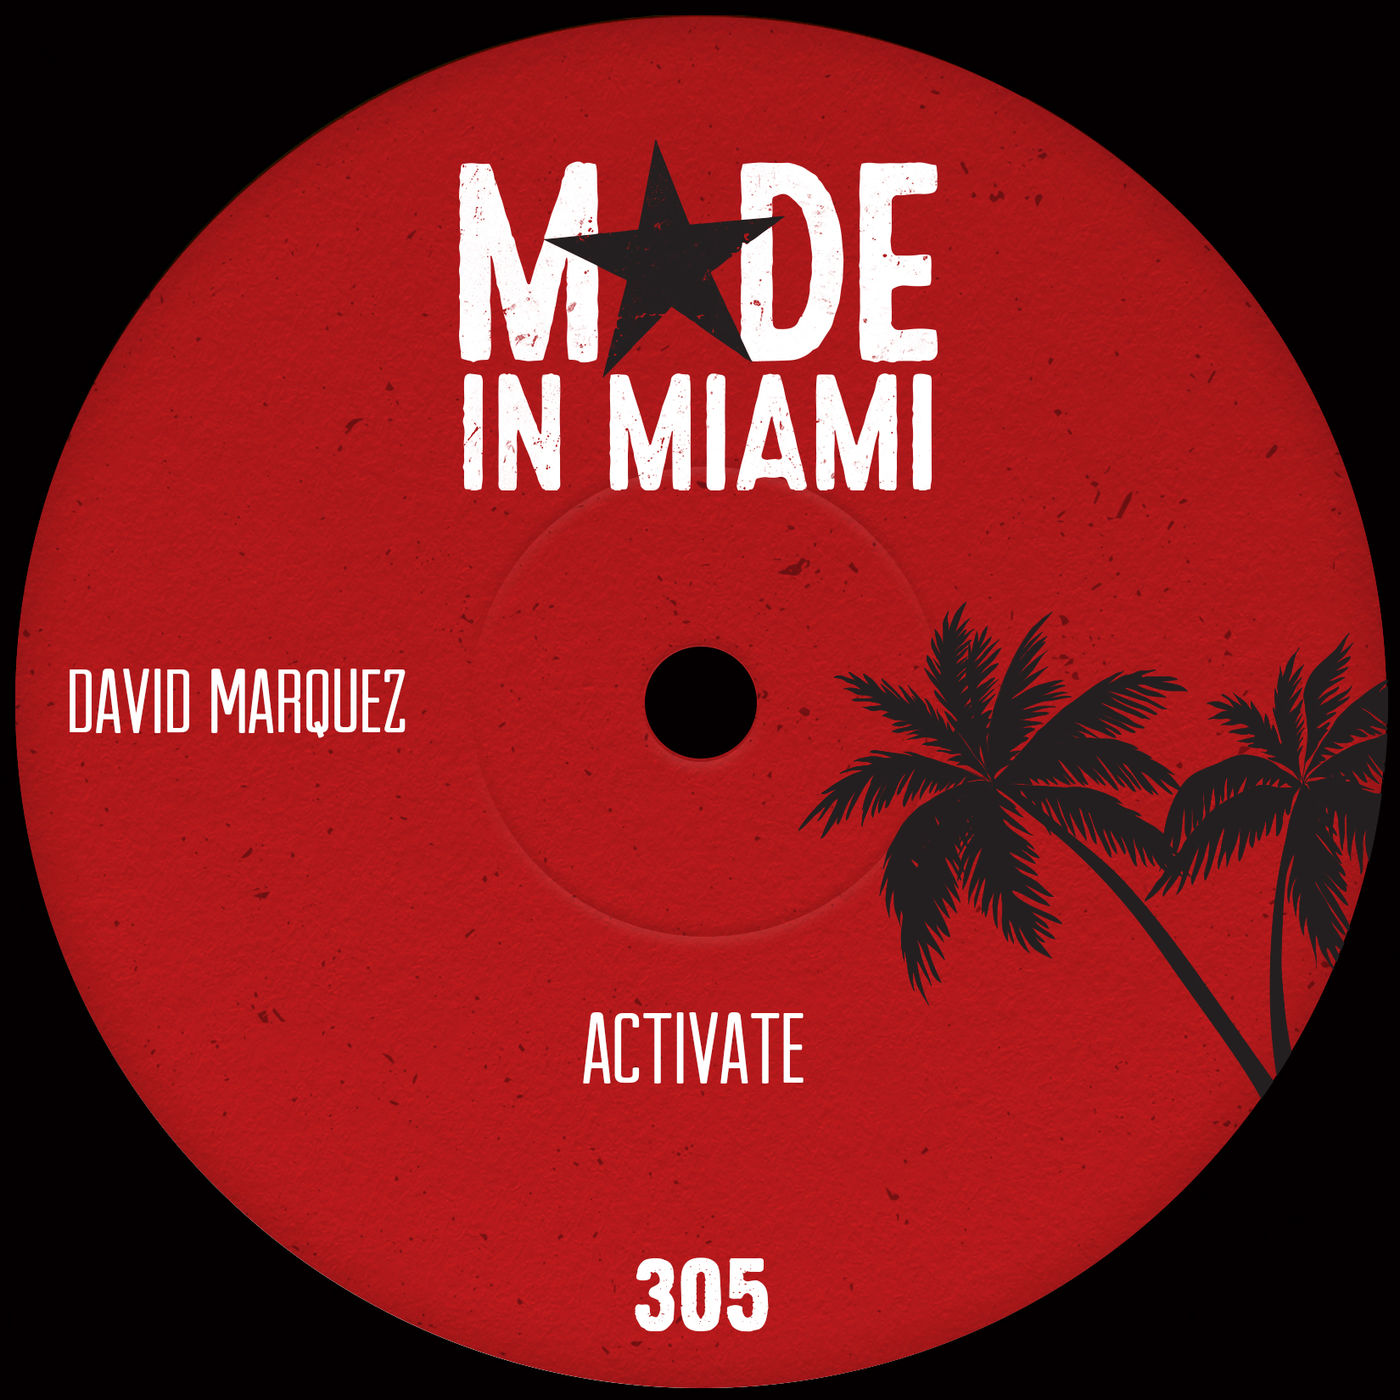 David Marquez - Activate / Made In Miami